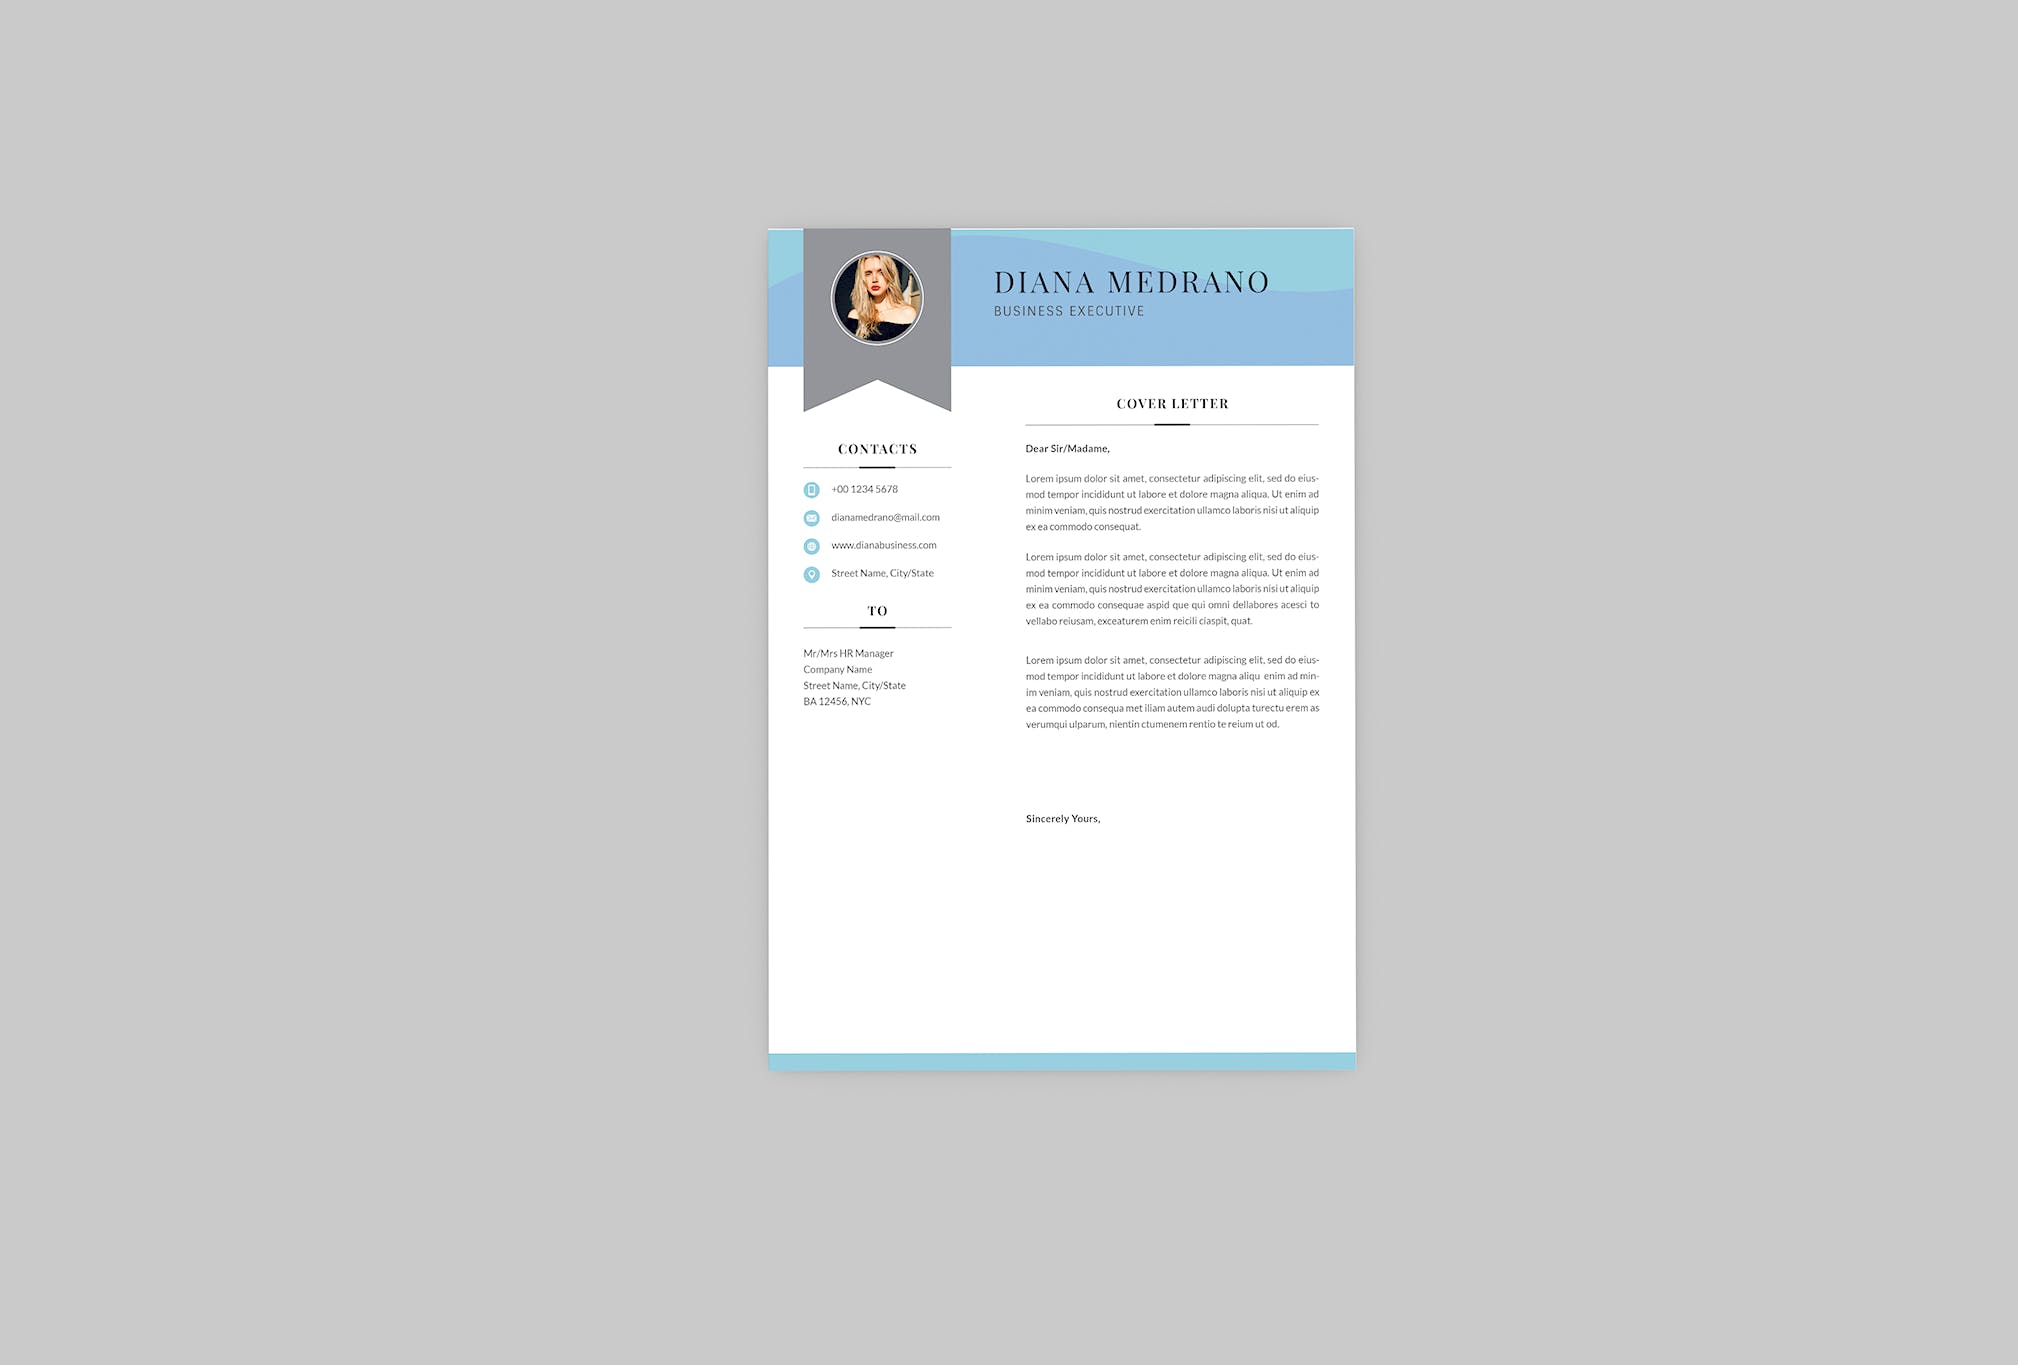 3合1企业主管电子非凡图库精选简历模板 Diana Business Resume Designer插图(1)